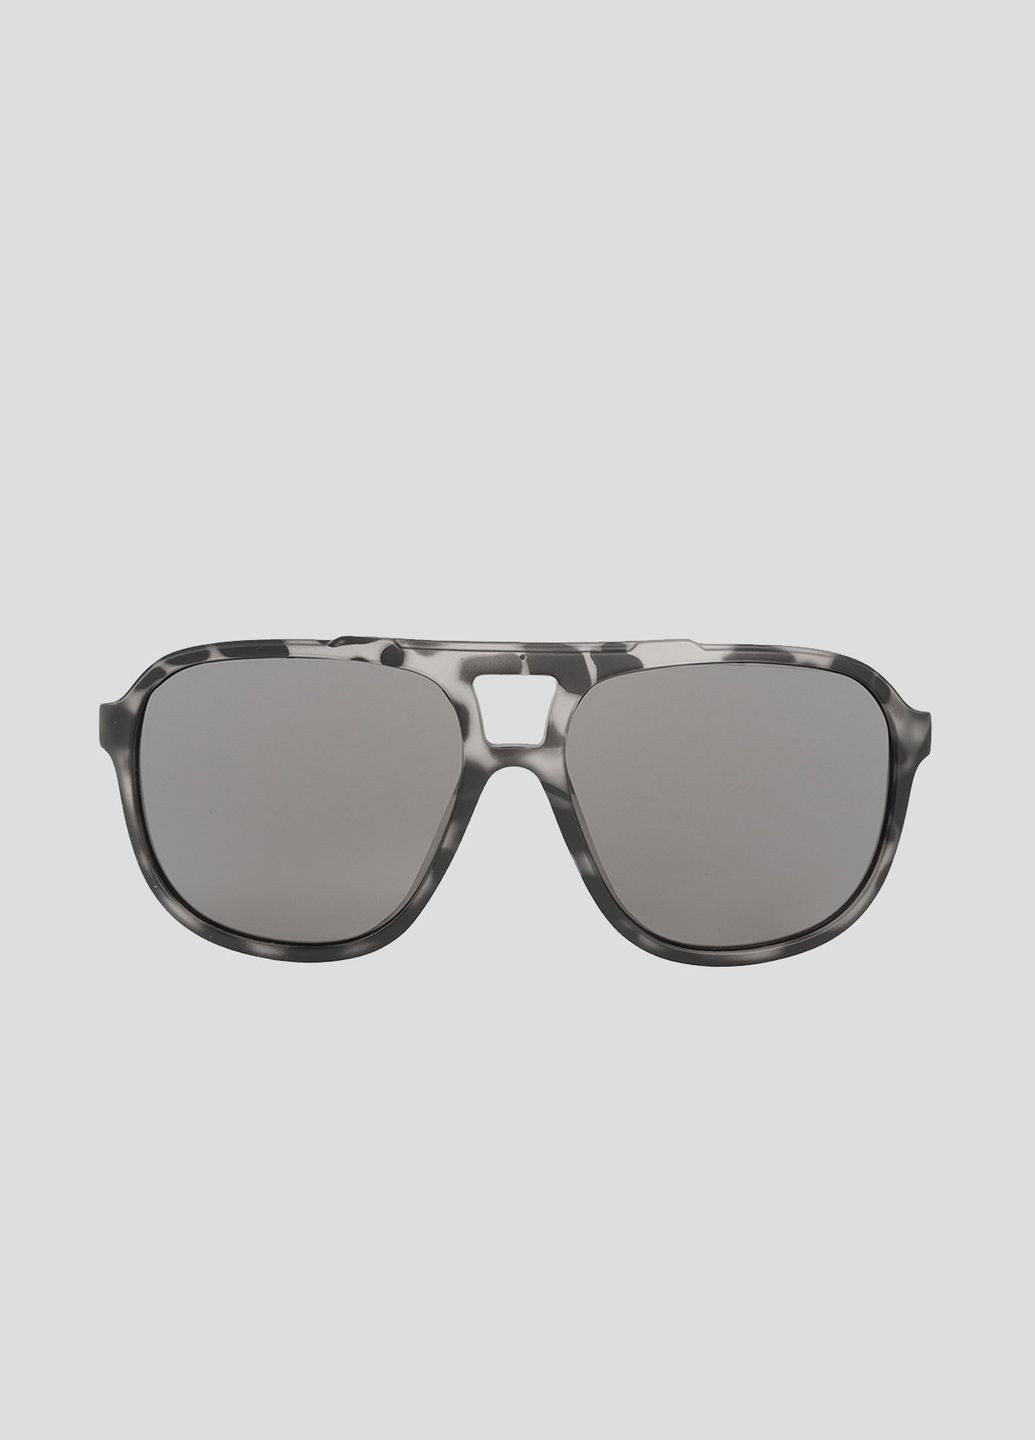 Черные солнцезащитные очки Snazz Alpina (292274052)